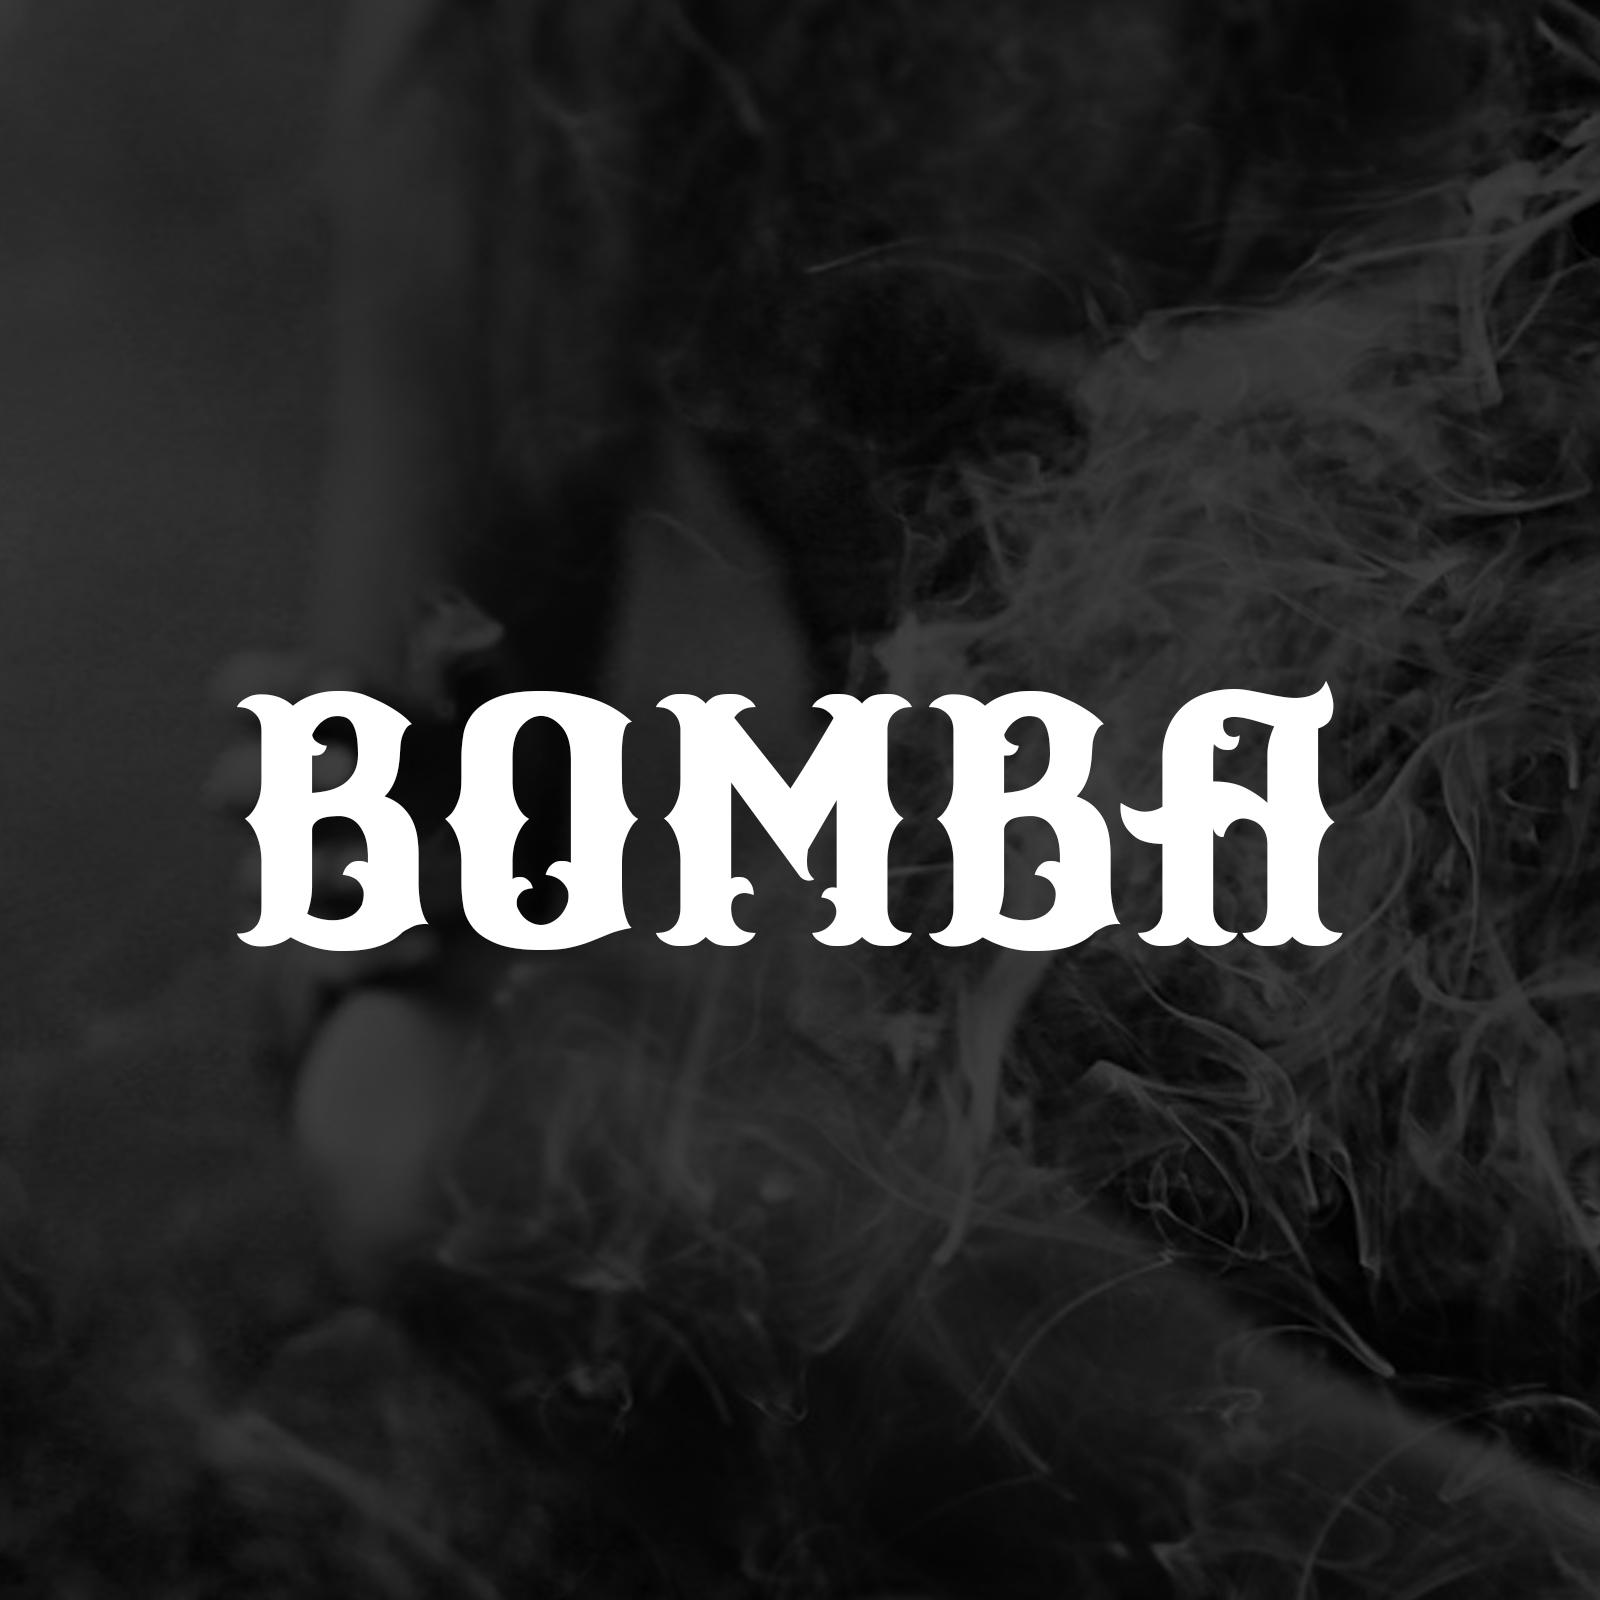 Bomba